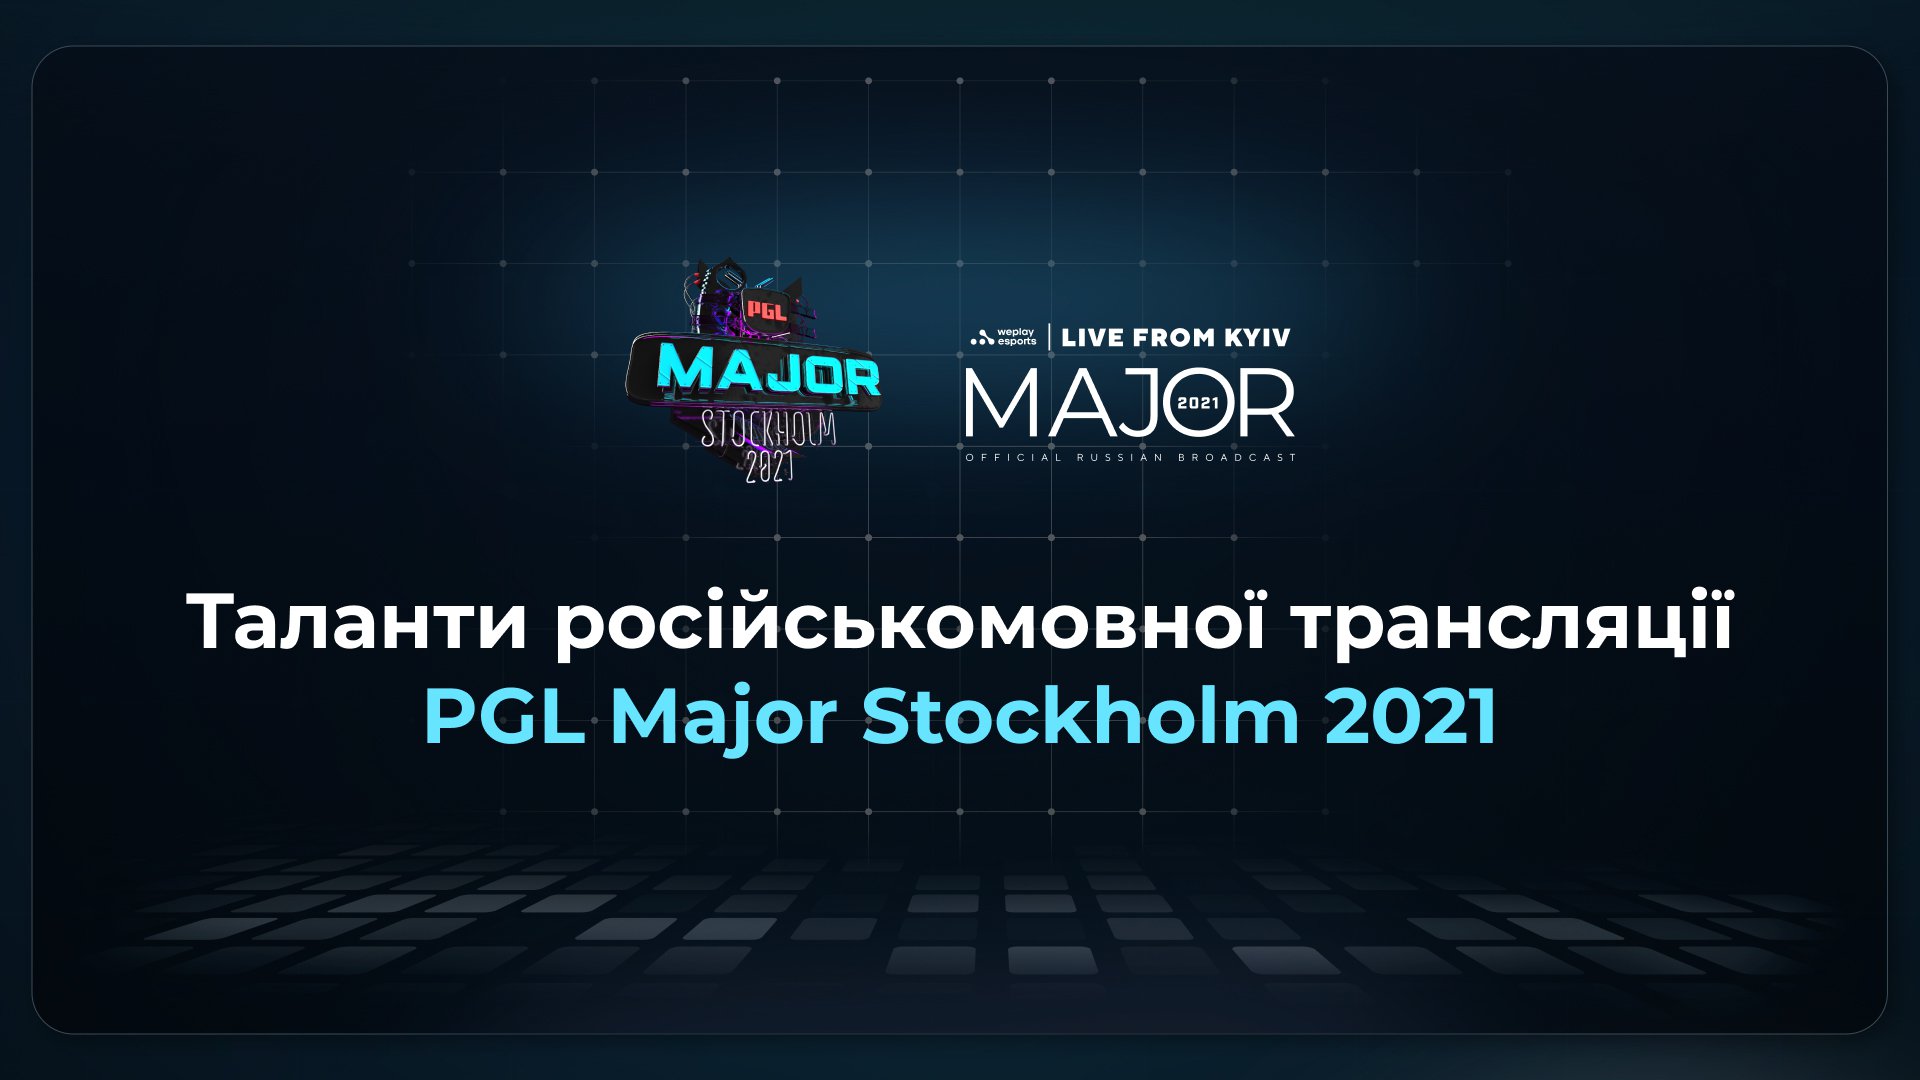 Оголошено таланти російськомовної трансляції PGL Major Stockholm 2021. Зображення: WePlay Holding